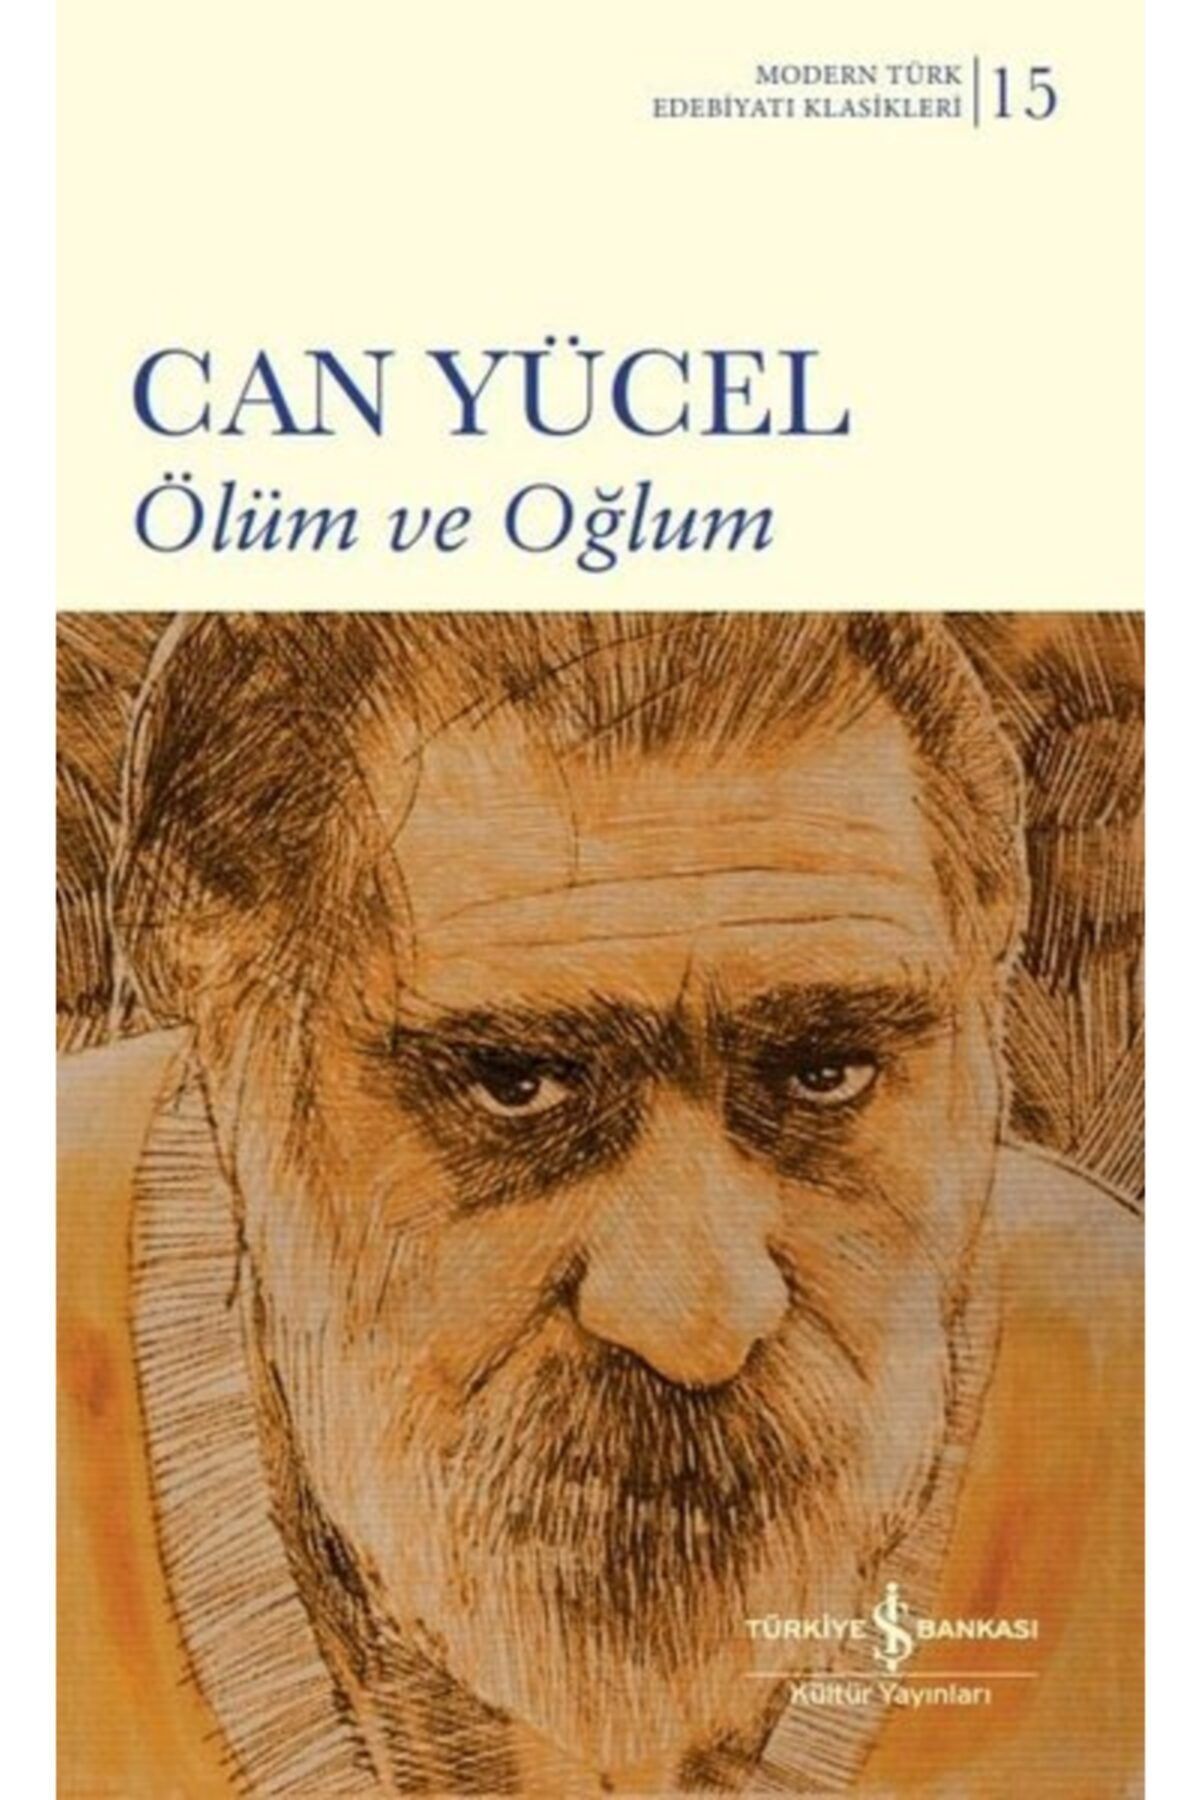 Türkiye İş Bankası Kültür Yayınları Ölüm Ve Oğlum - Modern Türk Edebiyatı Klasikleri